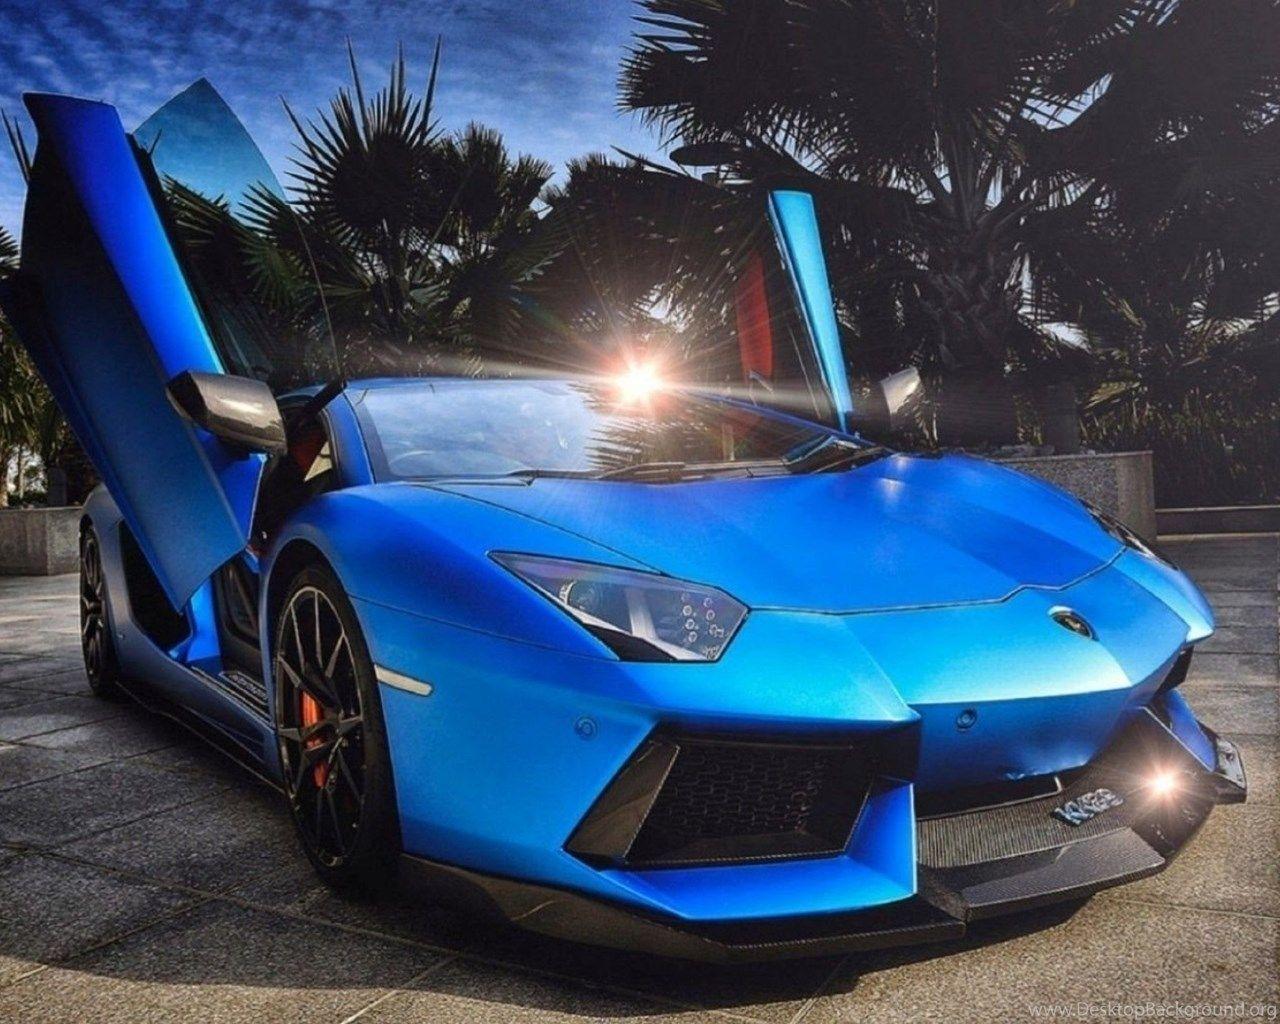 Blue Fire Lamborghini Wallpapers - Top Free Blue Fire Lamborghini